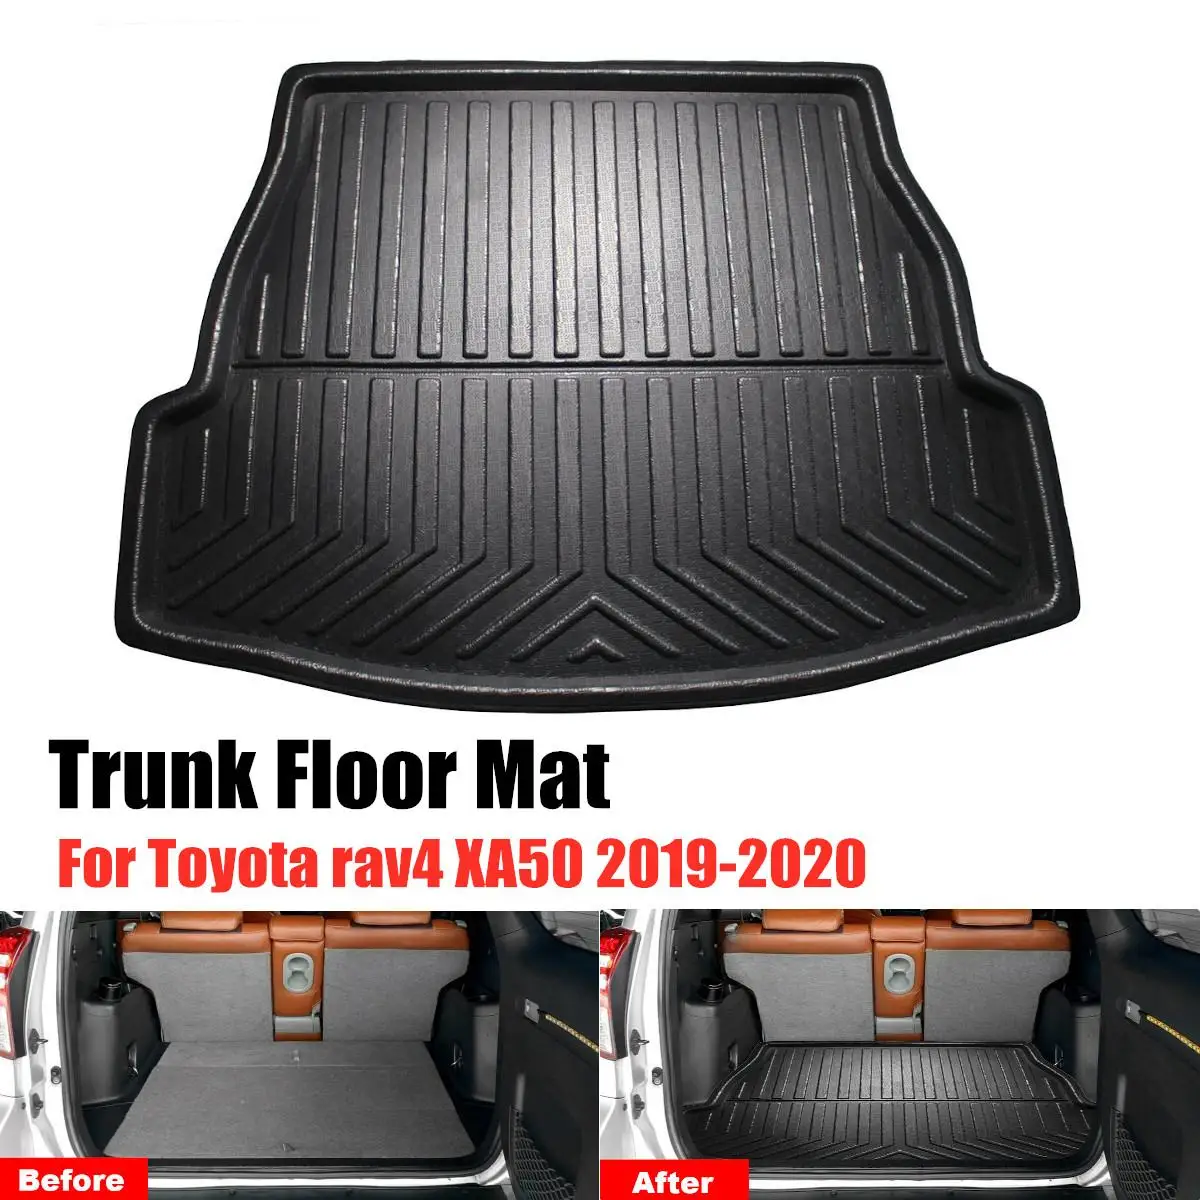 Rear Rubber Trunk Floor Mat For Toyota RAV4 2019 2020 XA50 Waterproof Car Rear Cargo Liner Boot Tray Cover Matt Carpet Kick Pad